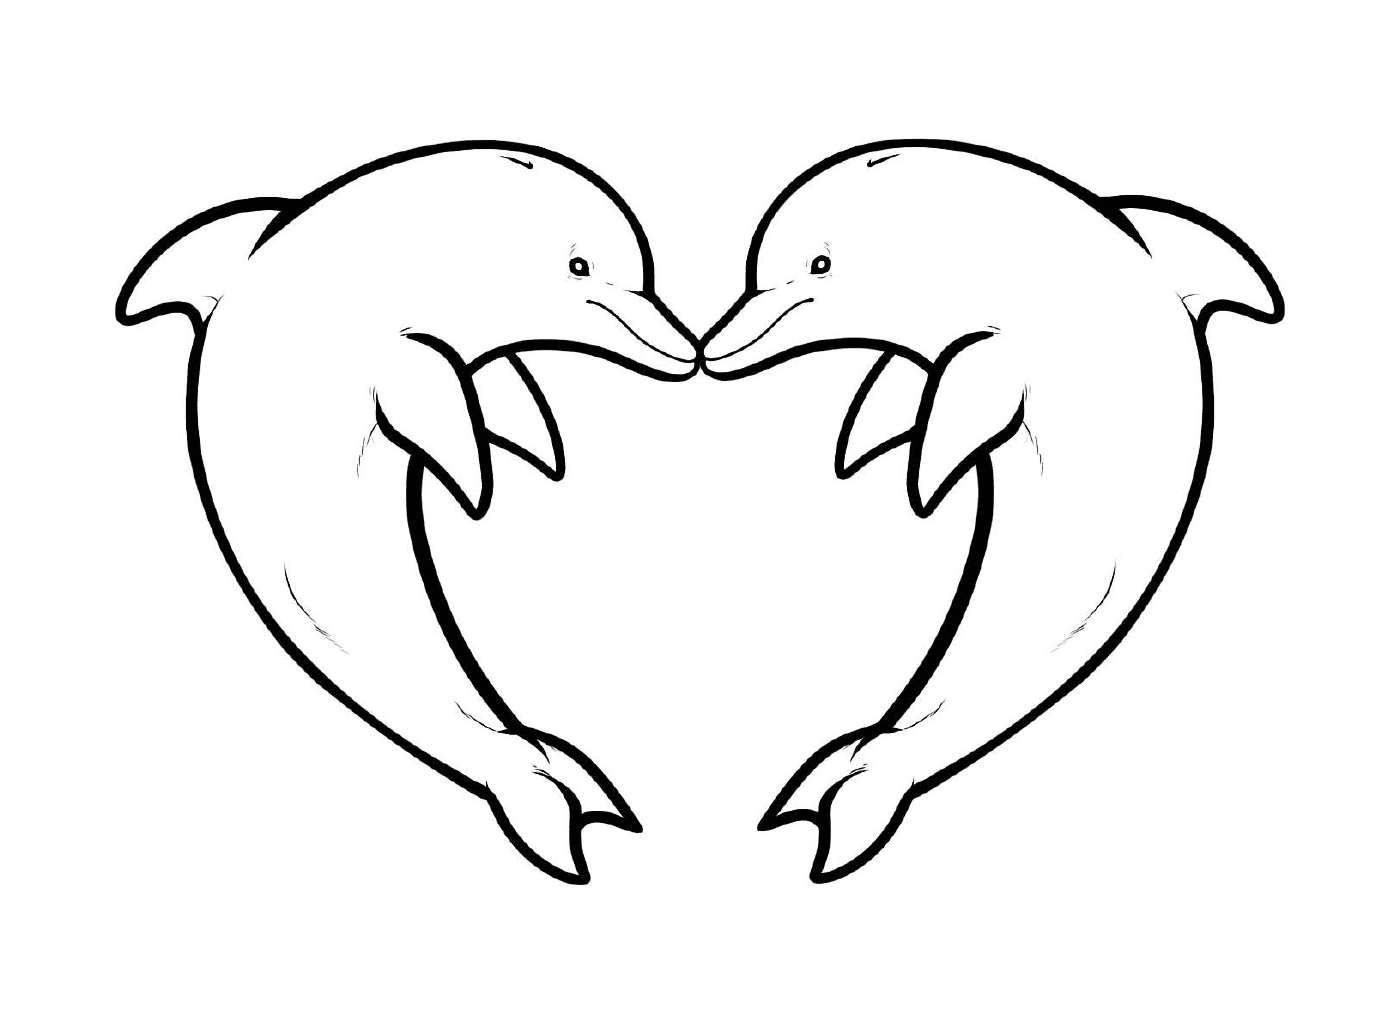  два дельфина формируют форму сердца 